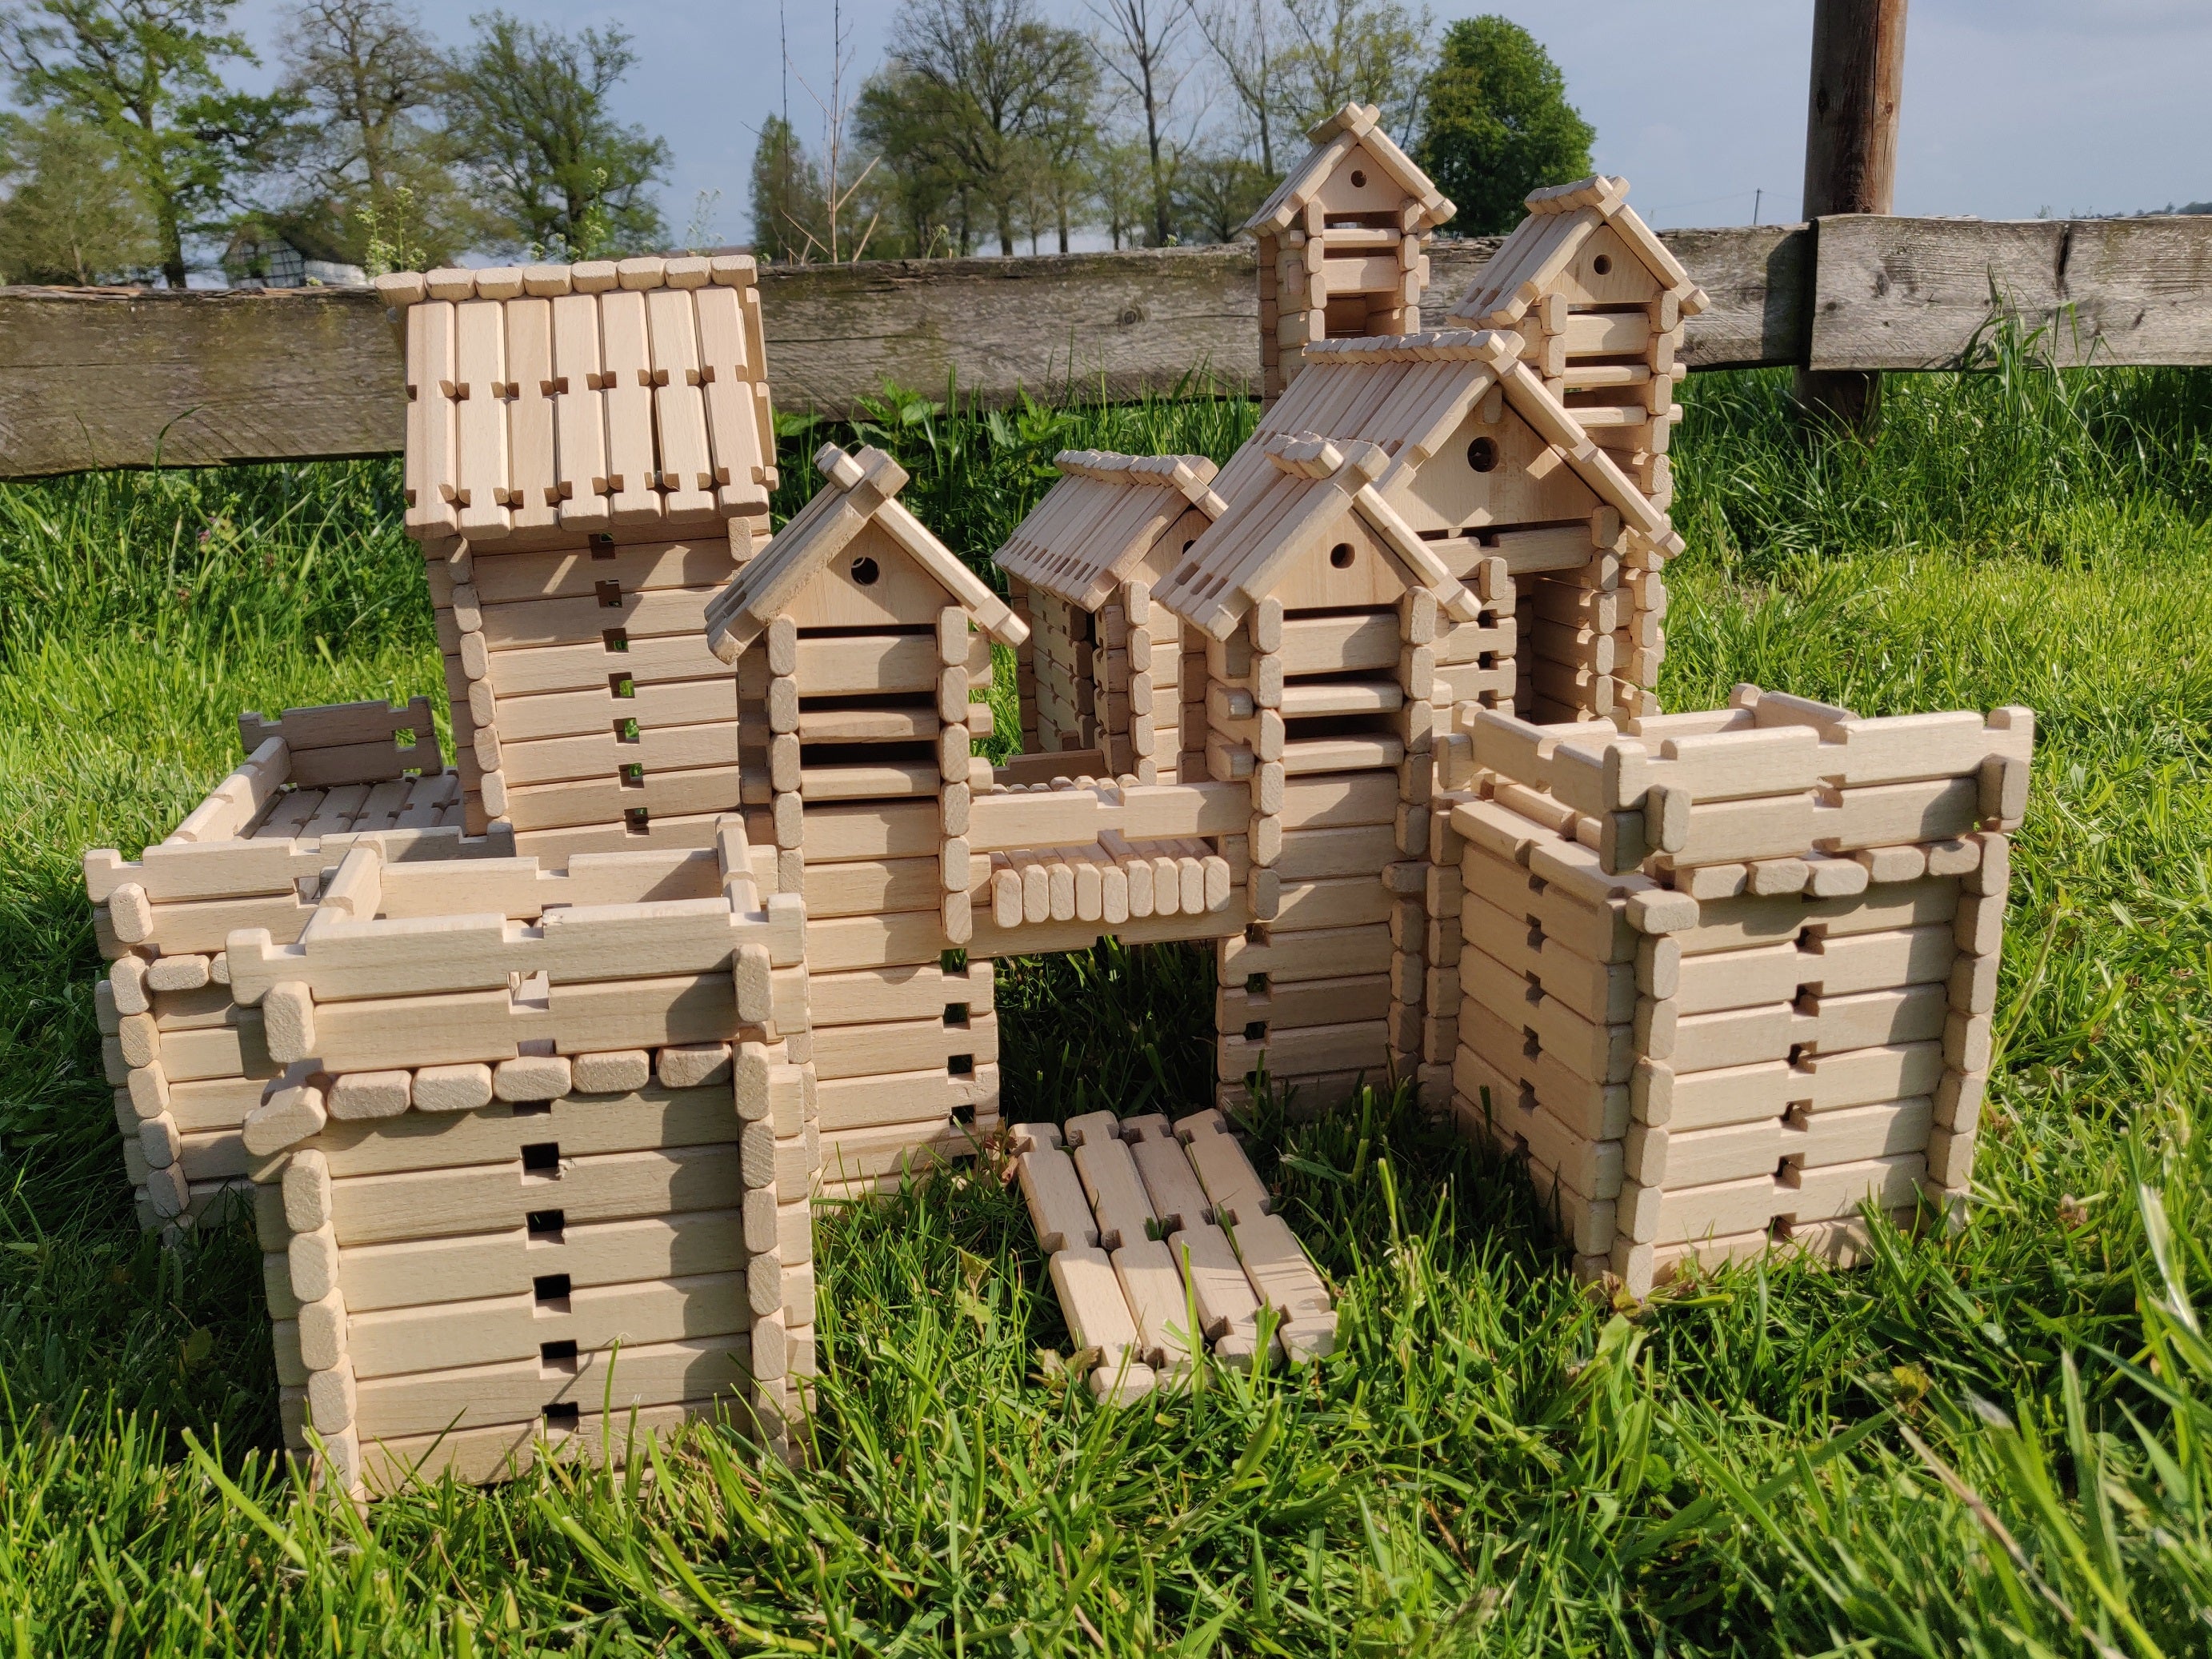 Kit de juguetes de madera LOGO-BURG, bloques de construcción de madera, bloques de construcción de madera